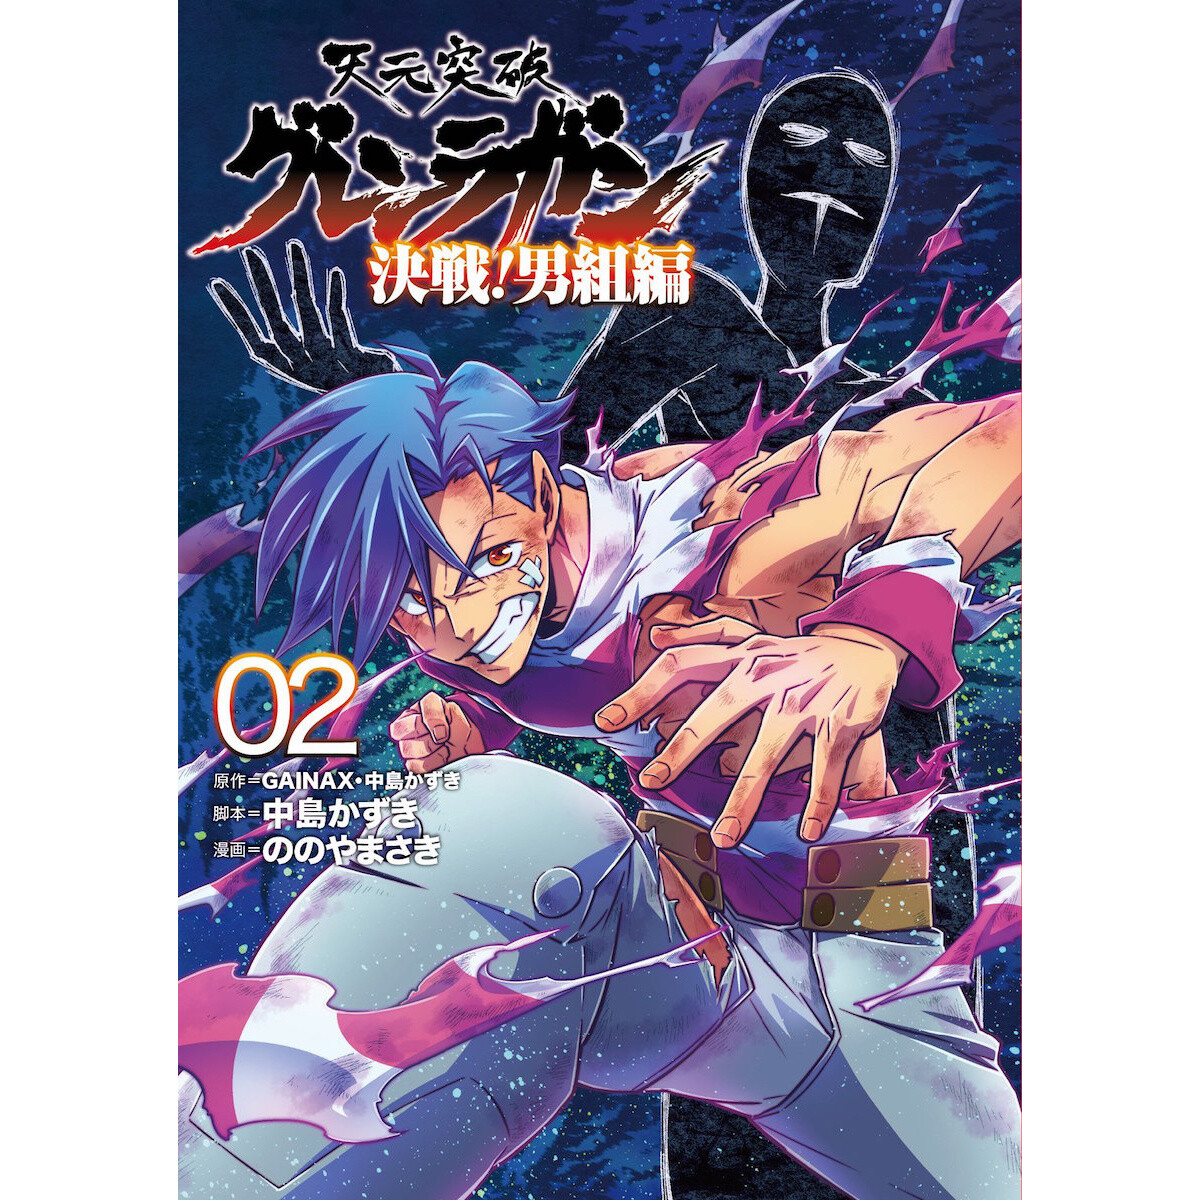 Tengen Toppa Gurren Lagann – 09-10 - Lost in Anime